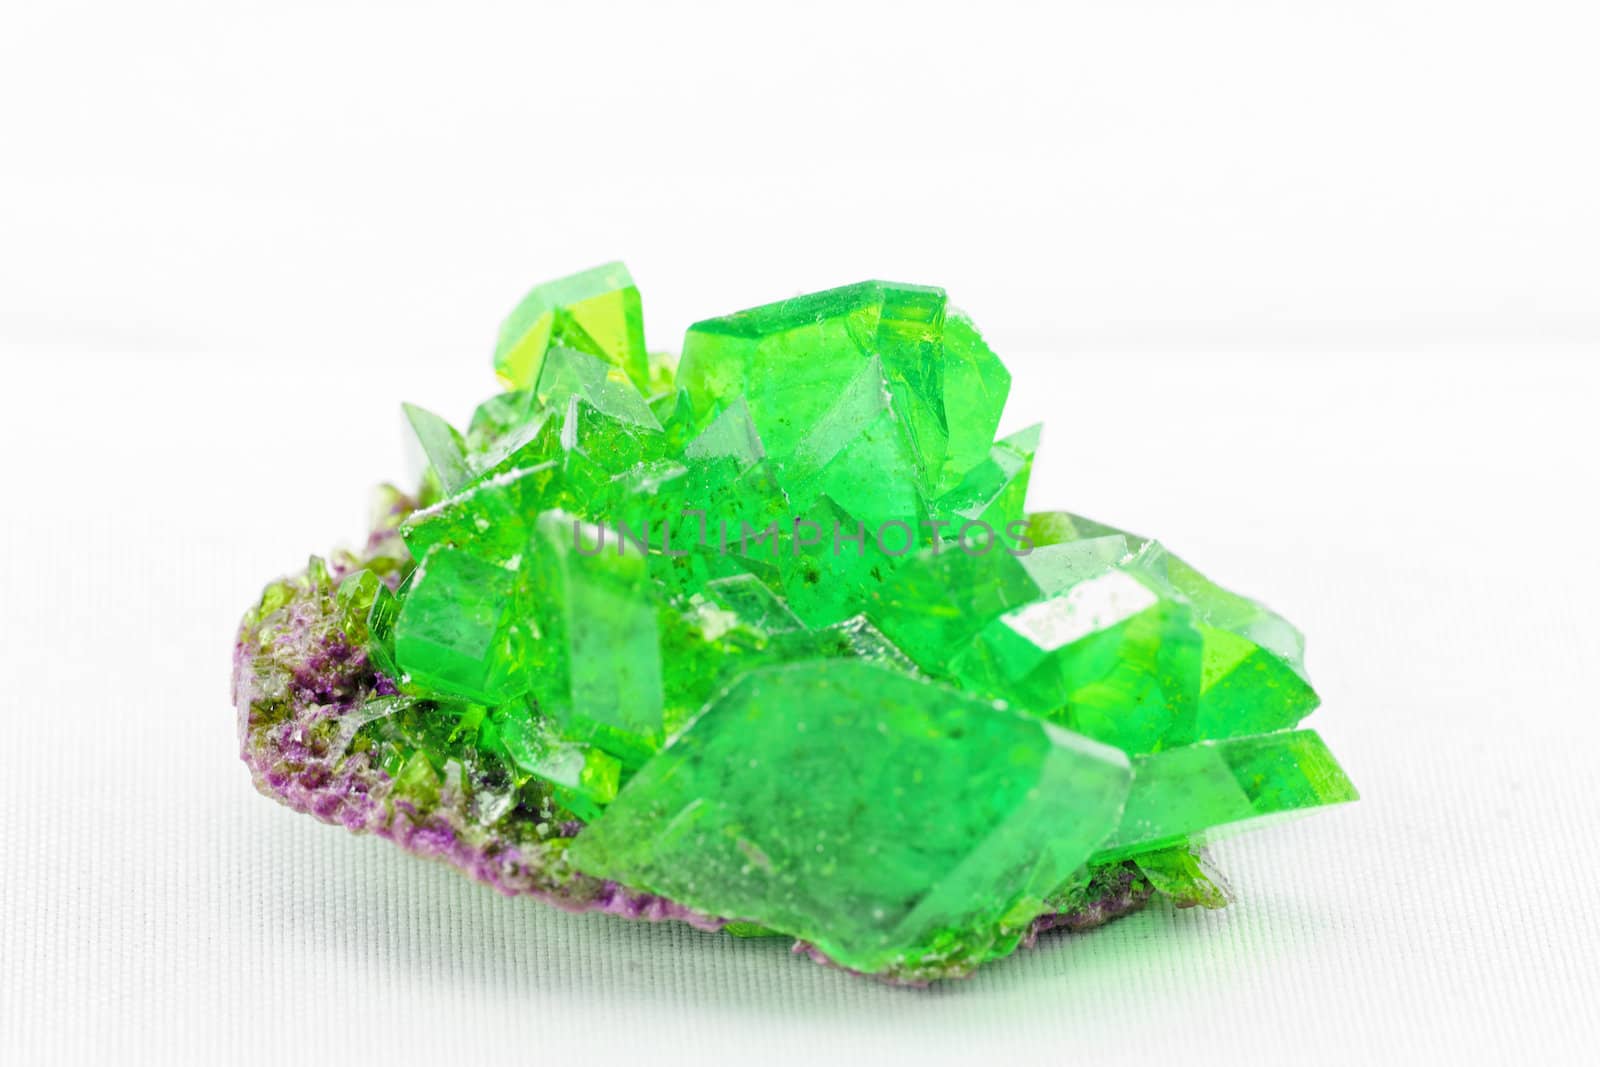 crystal macro photo in emerald color by NagyDodo